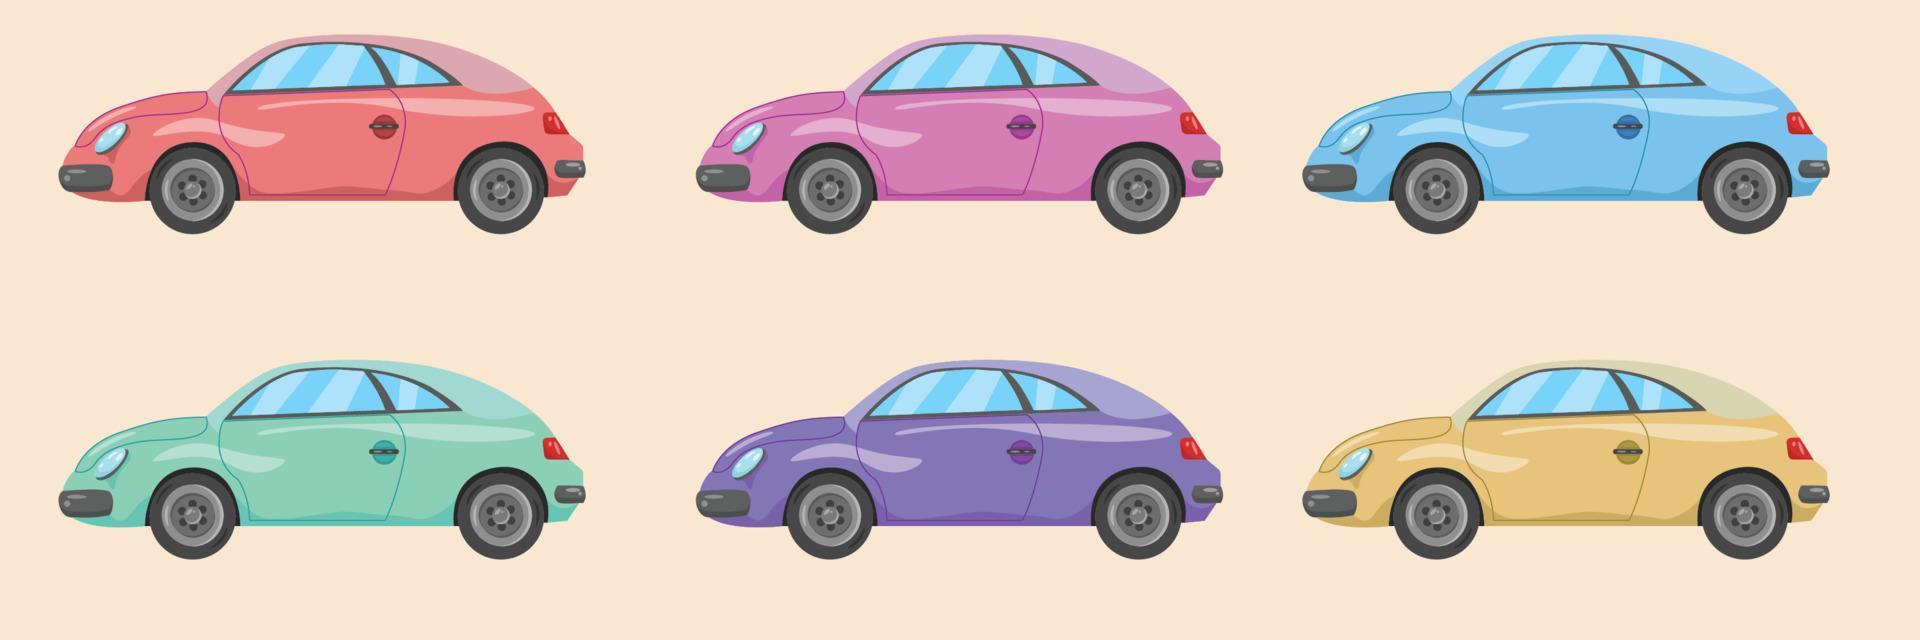 conjunto de coleção de vetores de carros coloridos em estilo de design plano